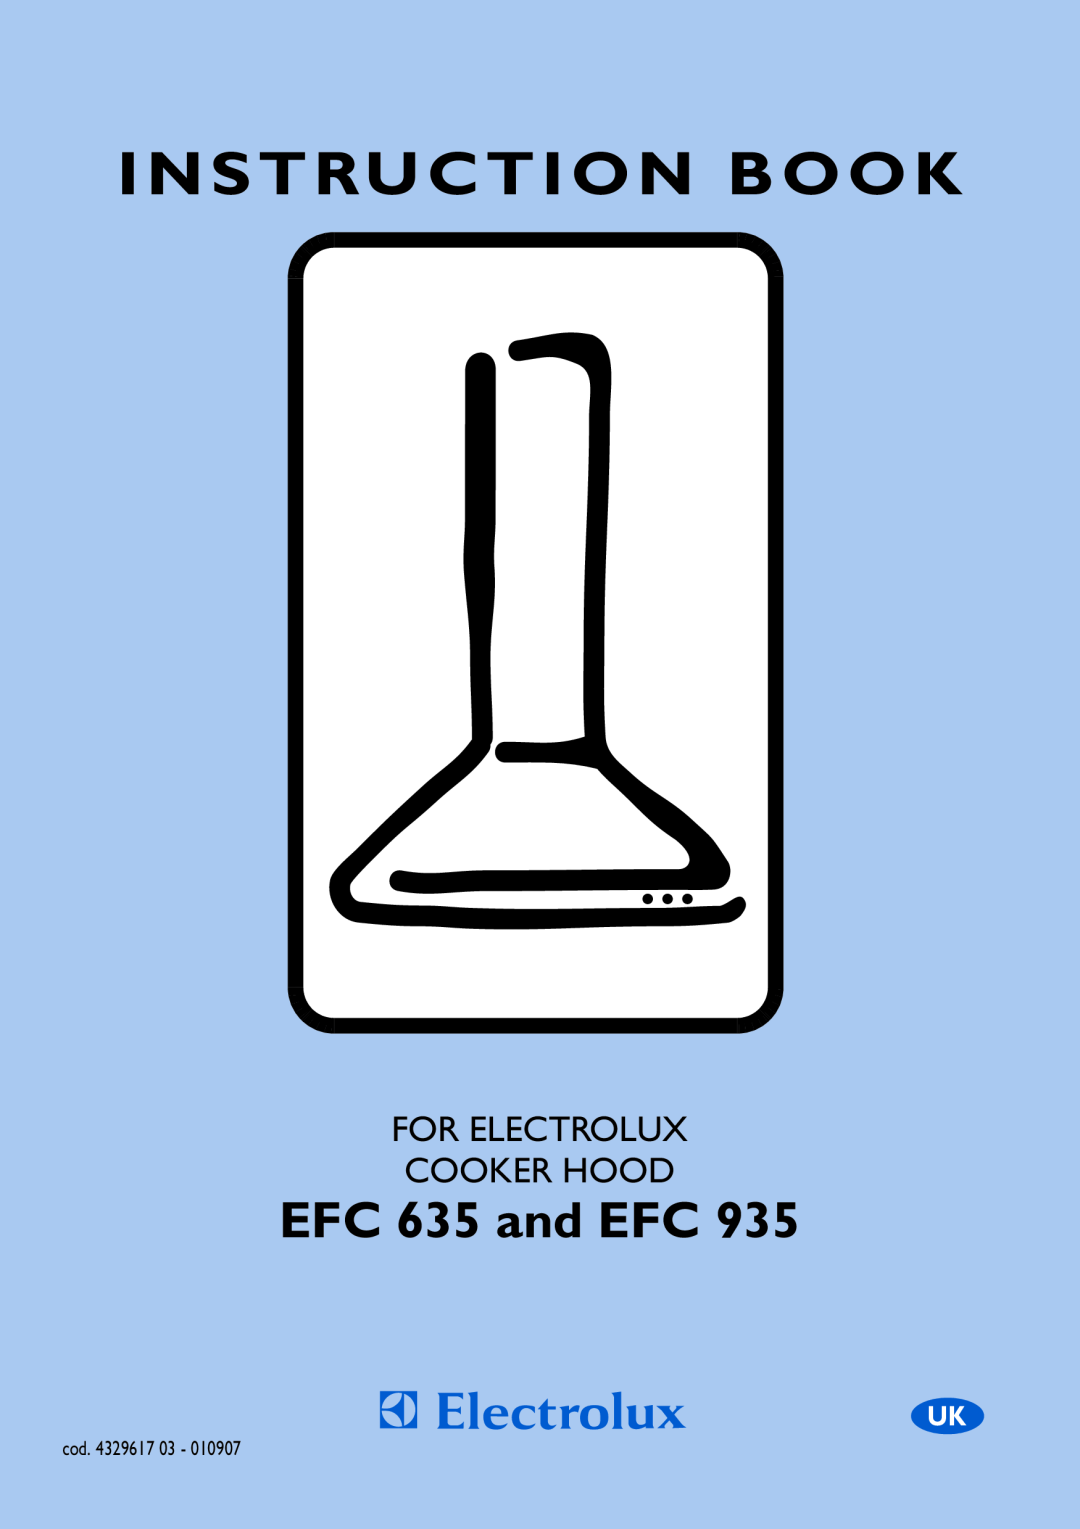 Electrolux EFC 935 manual Instruction Book, EFC 635 and EFC, For Electrolux Cooker Hood 